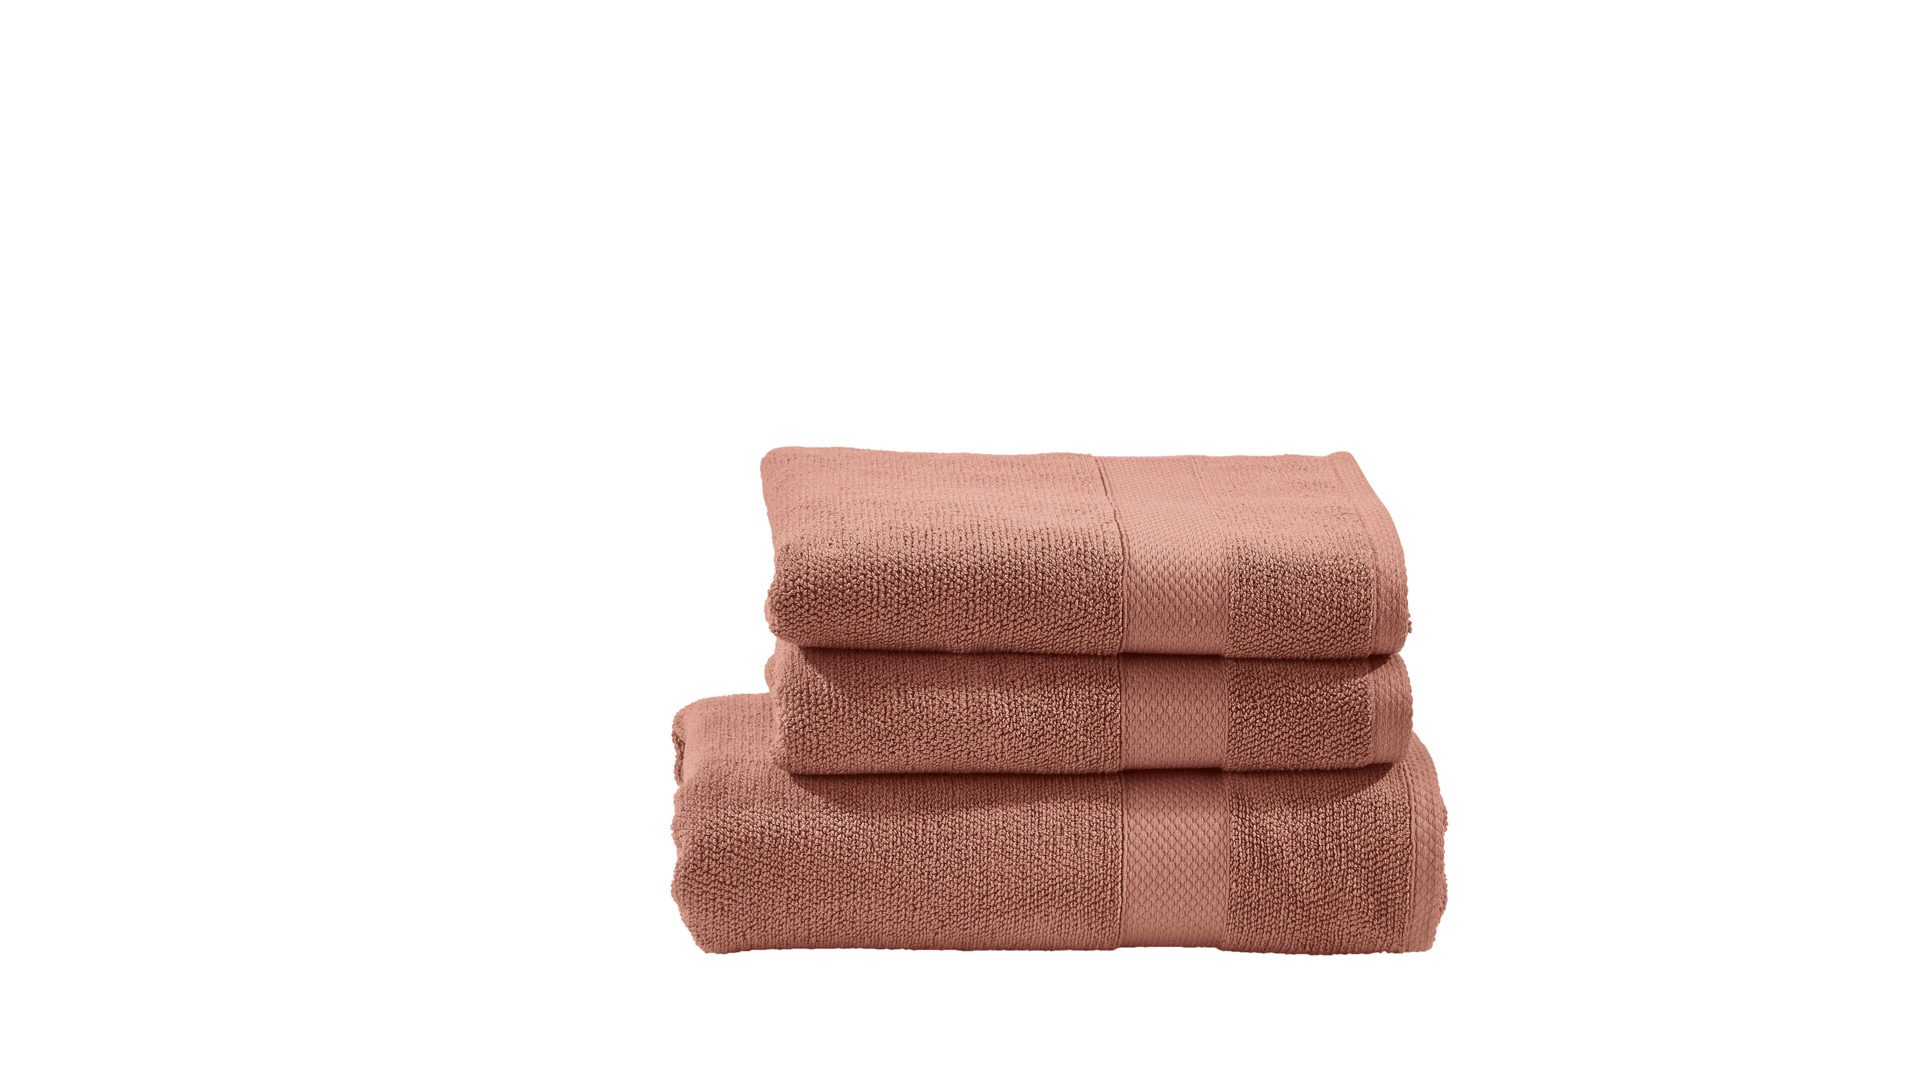 Handtuch-Set Done.® aus Stoff in Orange done.® Handtuch-Set Deluxe - Heimtextilien wüstensandfarbene Baumwolle  – dreiteilig